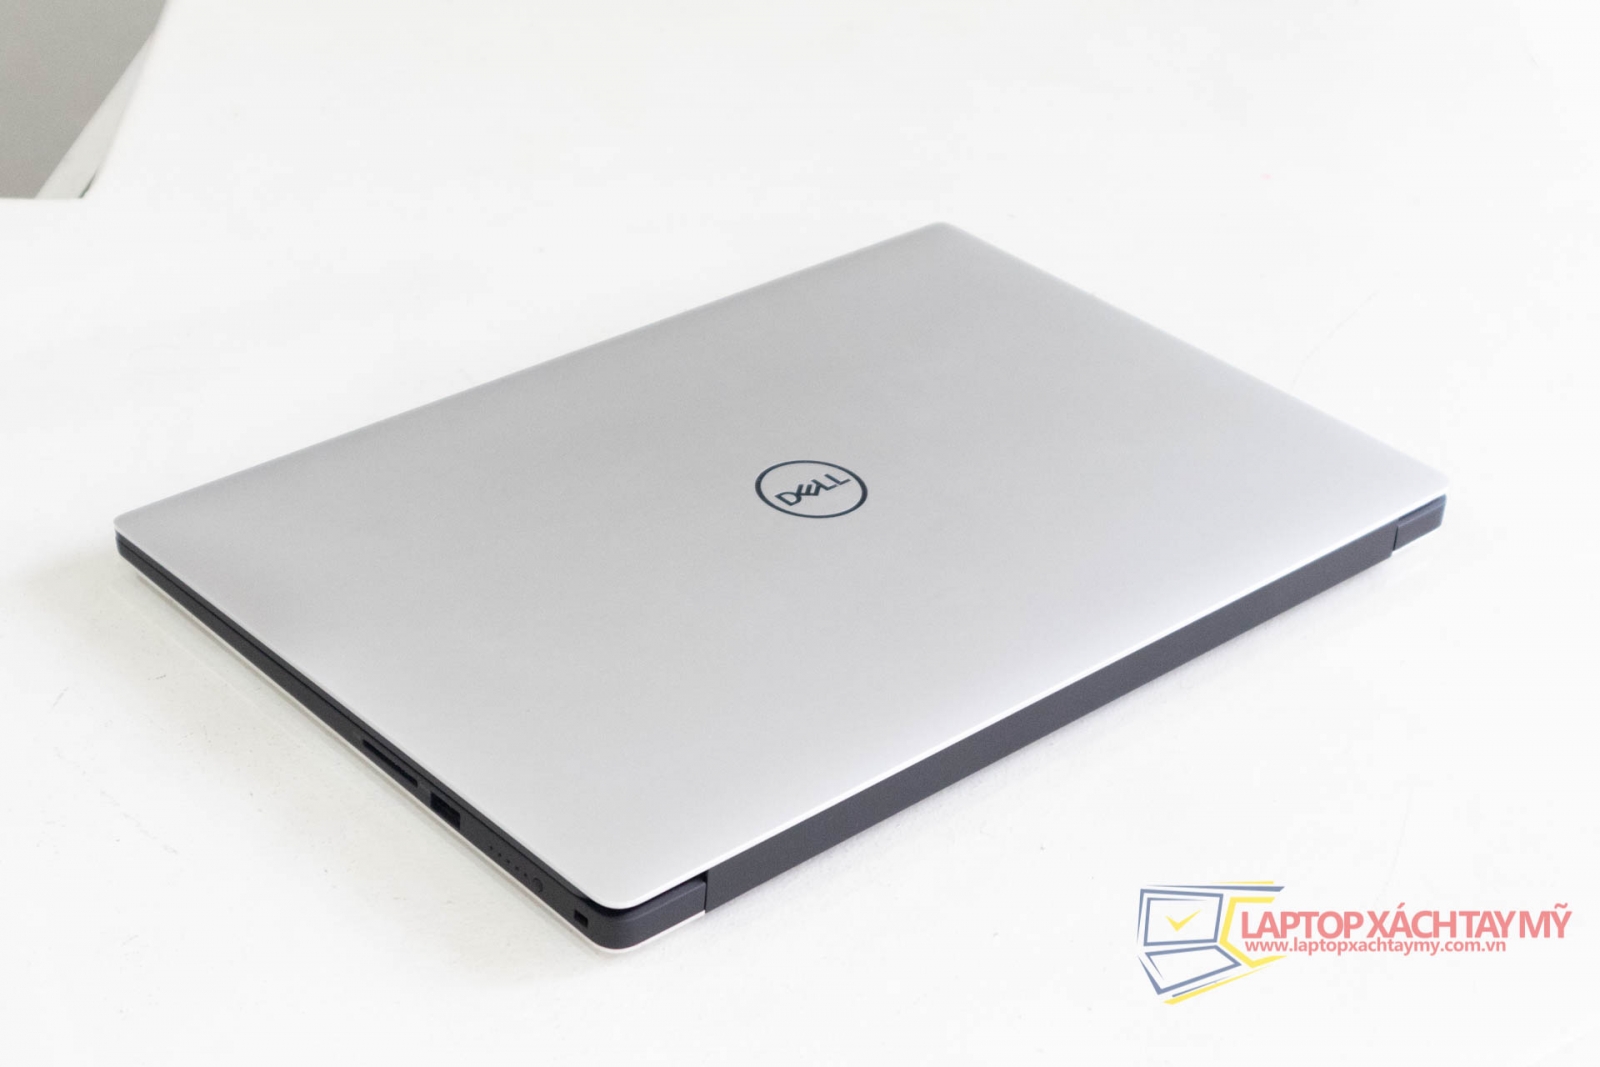 Dell Precision 5530 Laptop Đồ Họa Cảm Ứng I5 8300H 16G Ram 512G SSD